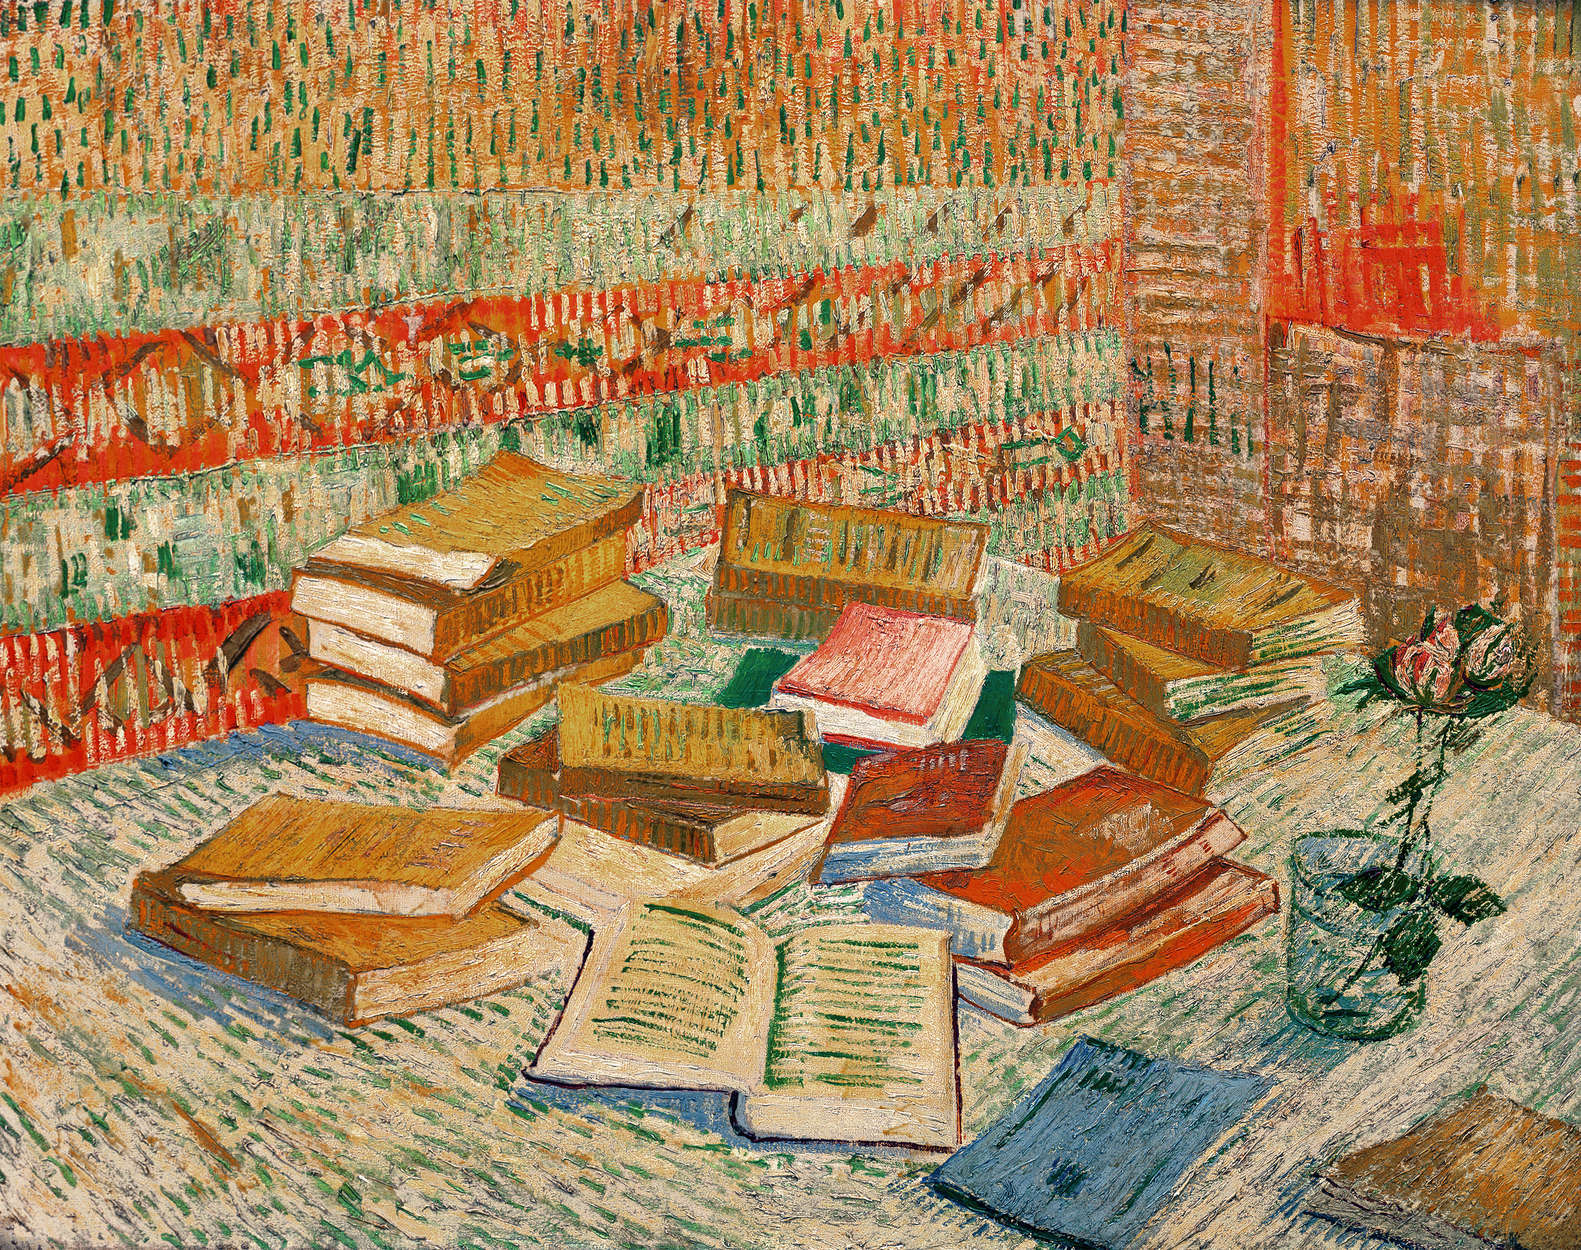             Mural "Los libros amarillos" de Vincent van Gogh
        